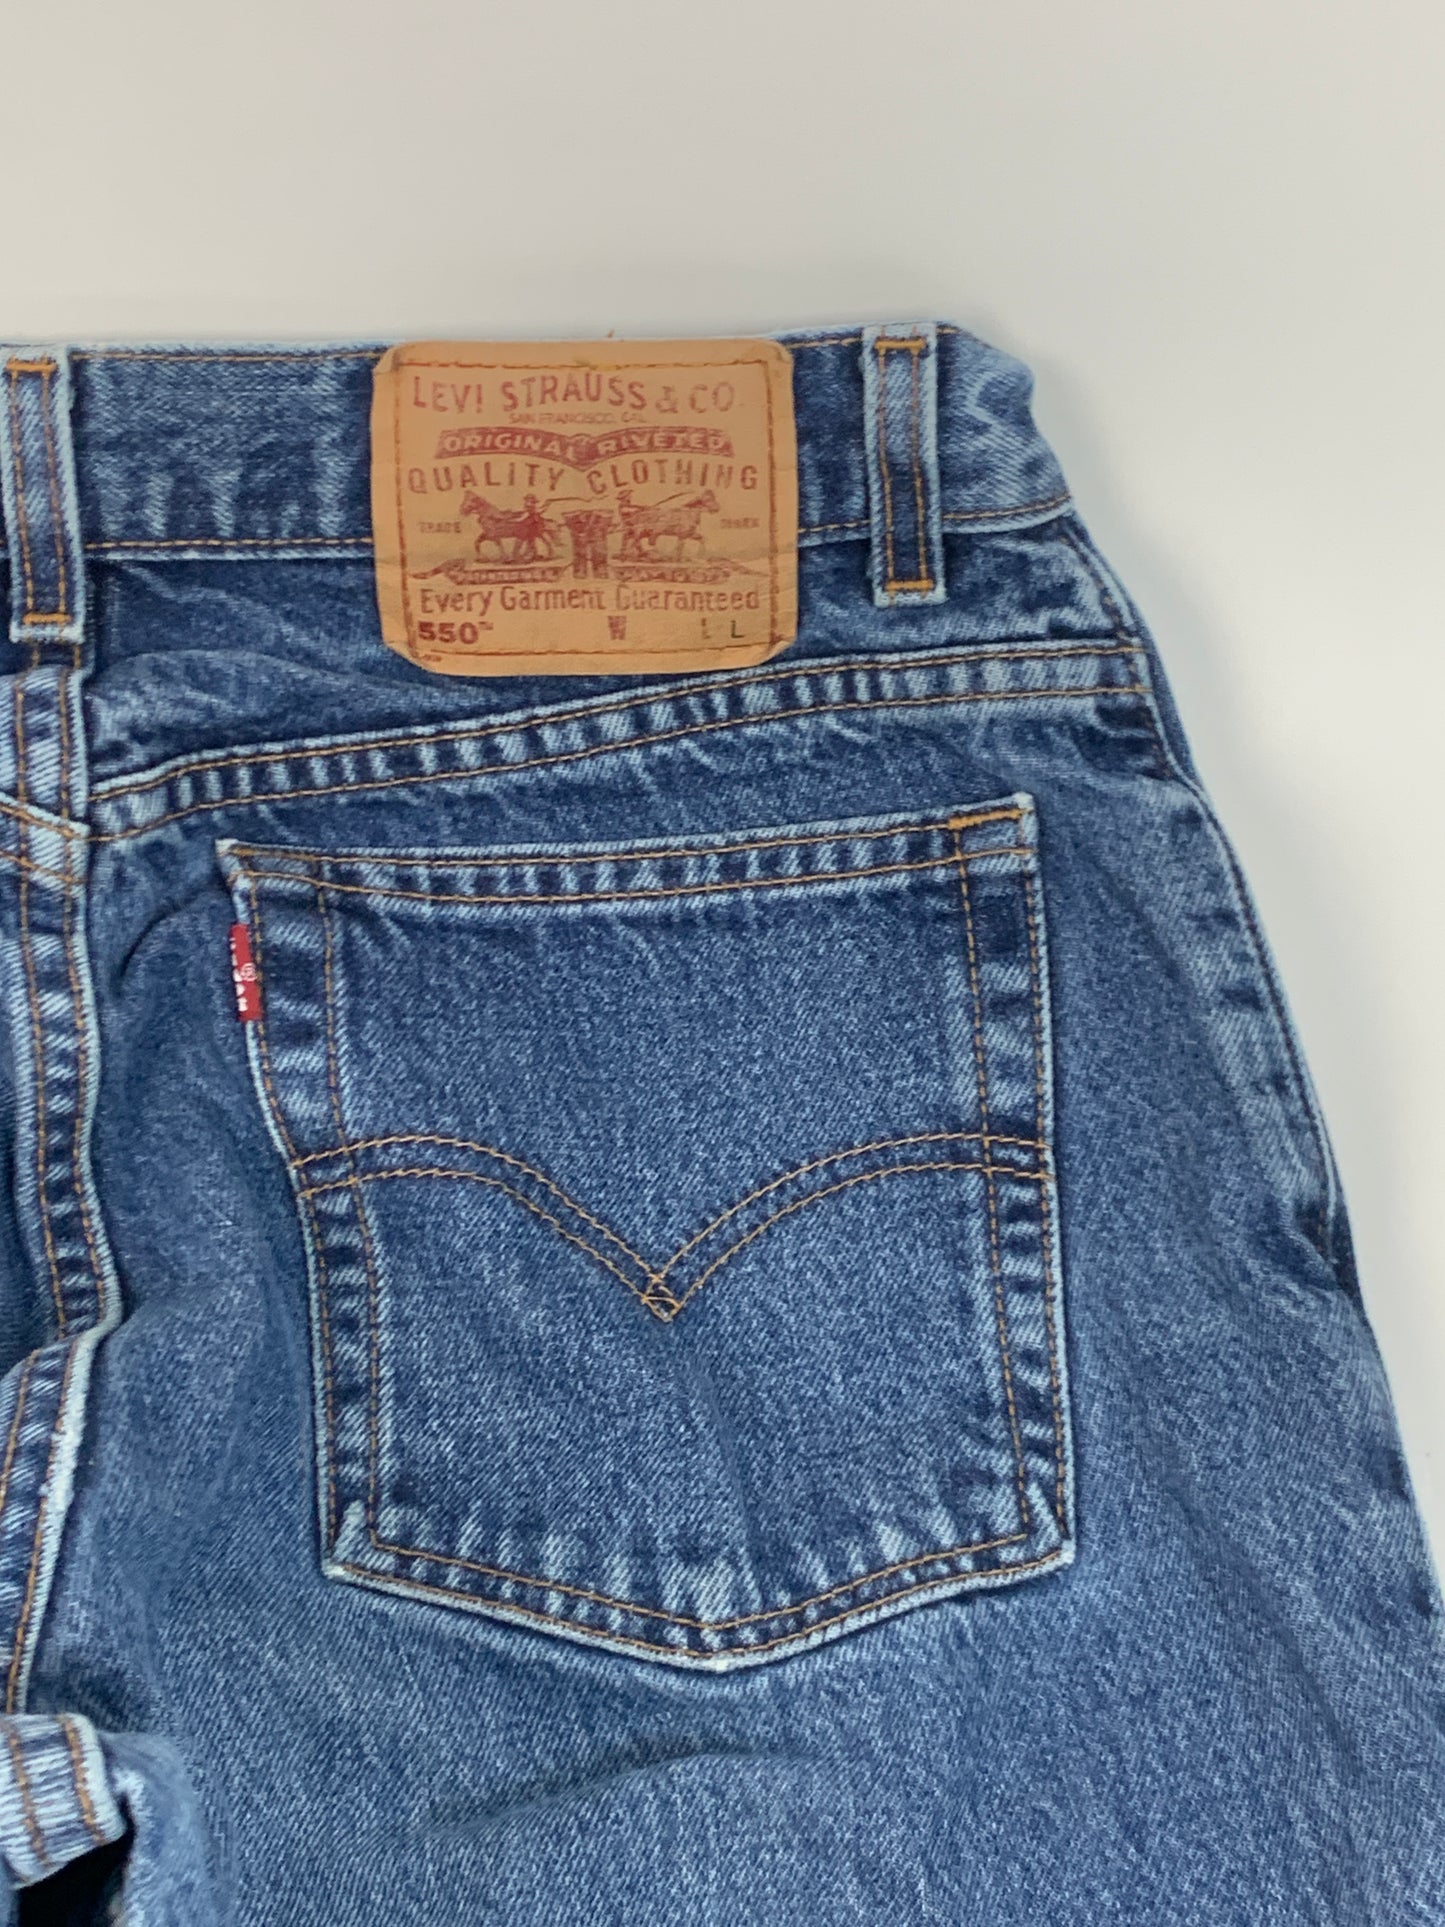 Levis 550 Vintage Jeans - 32